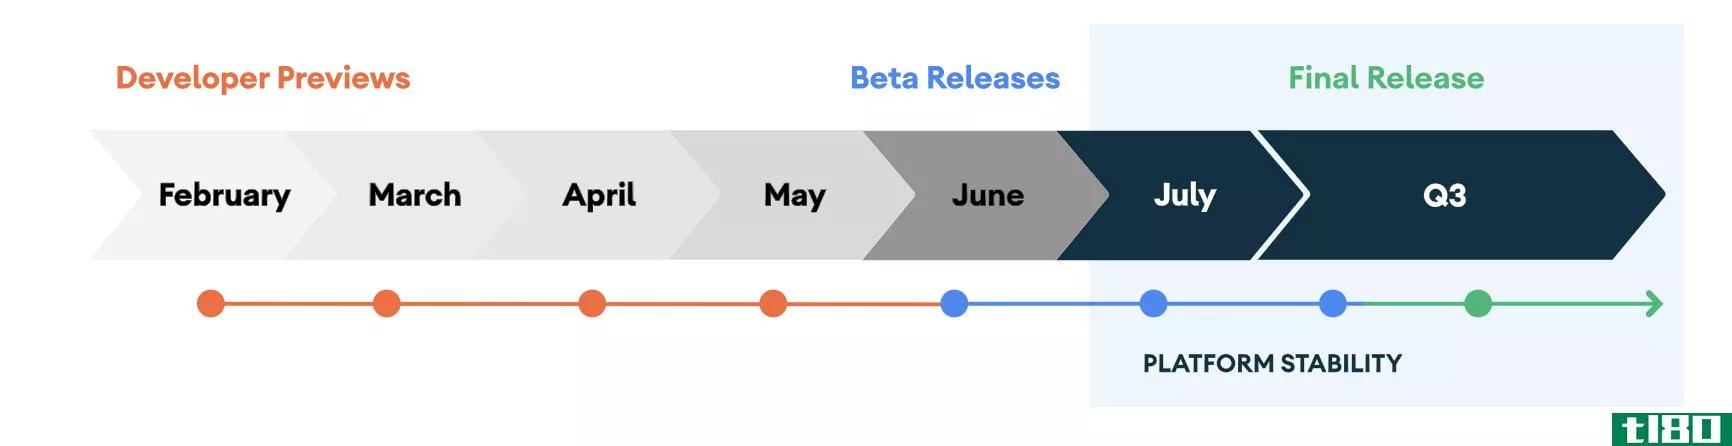 android 11公测版将于6月3日推出直播